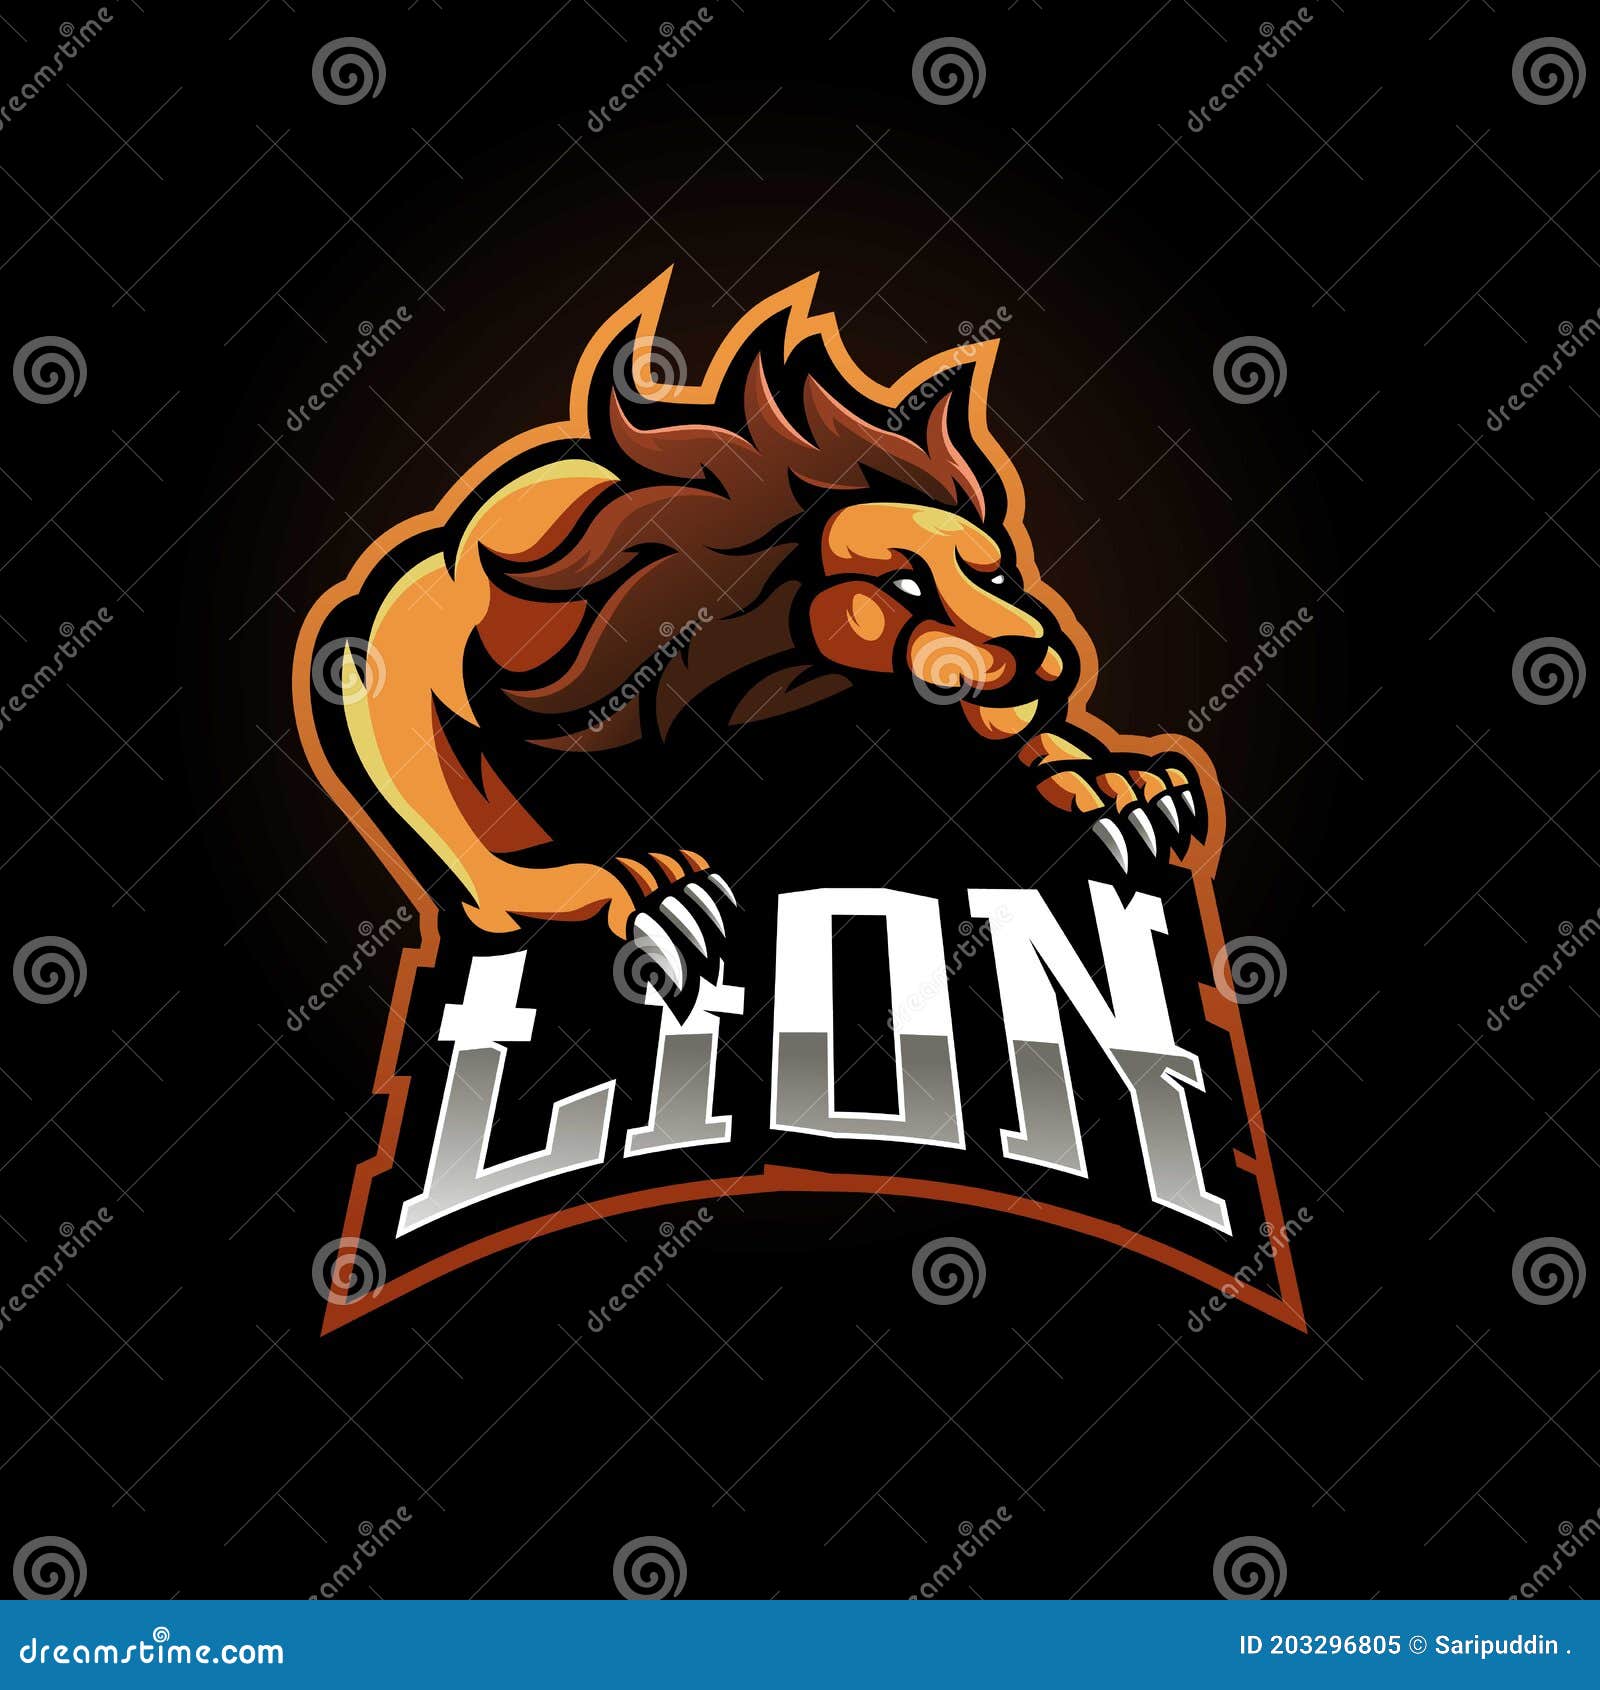 Lion X Gaming